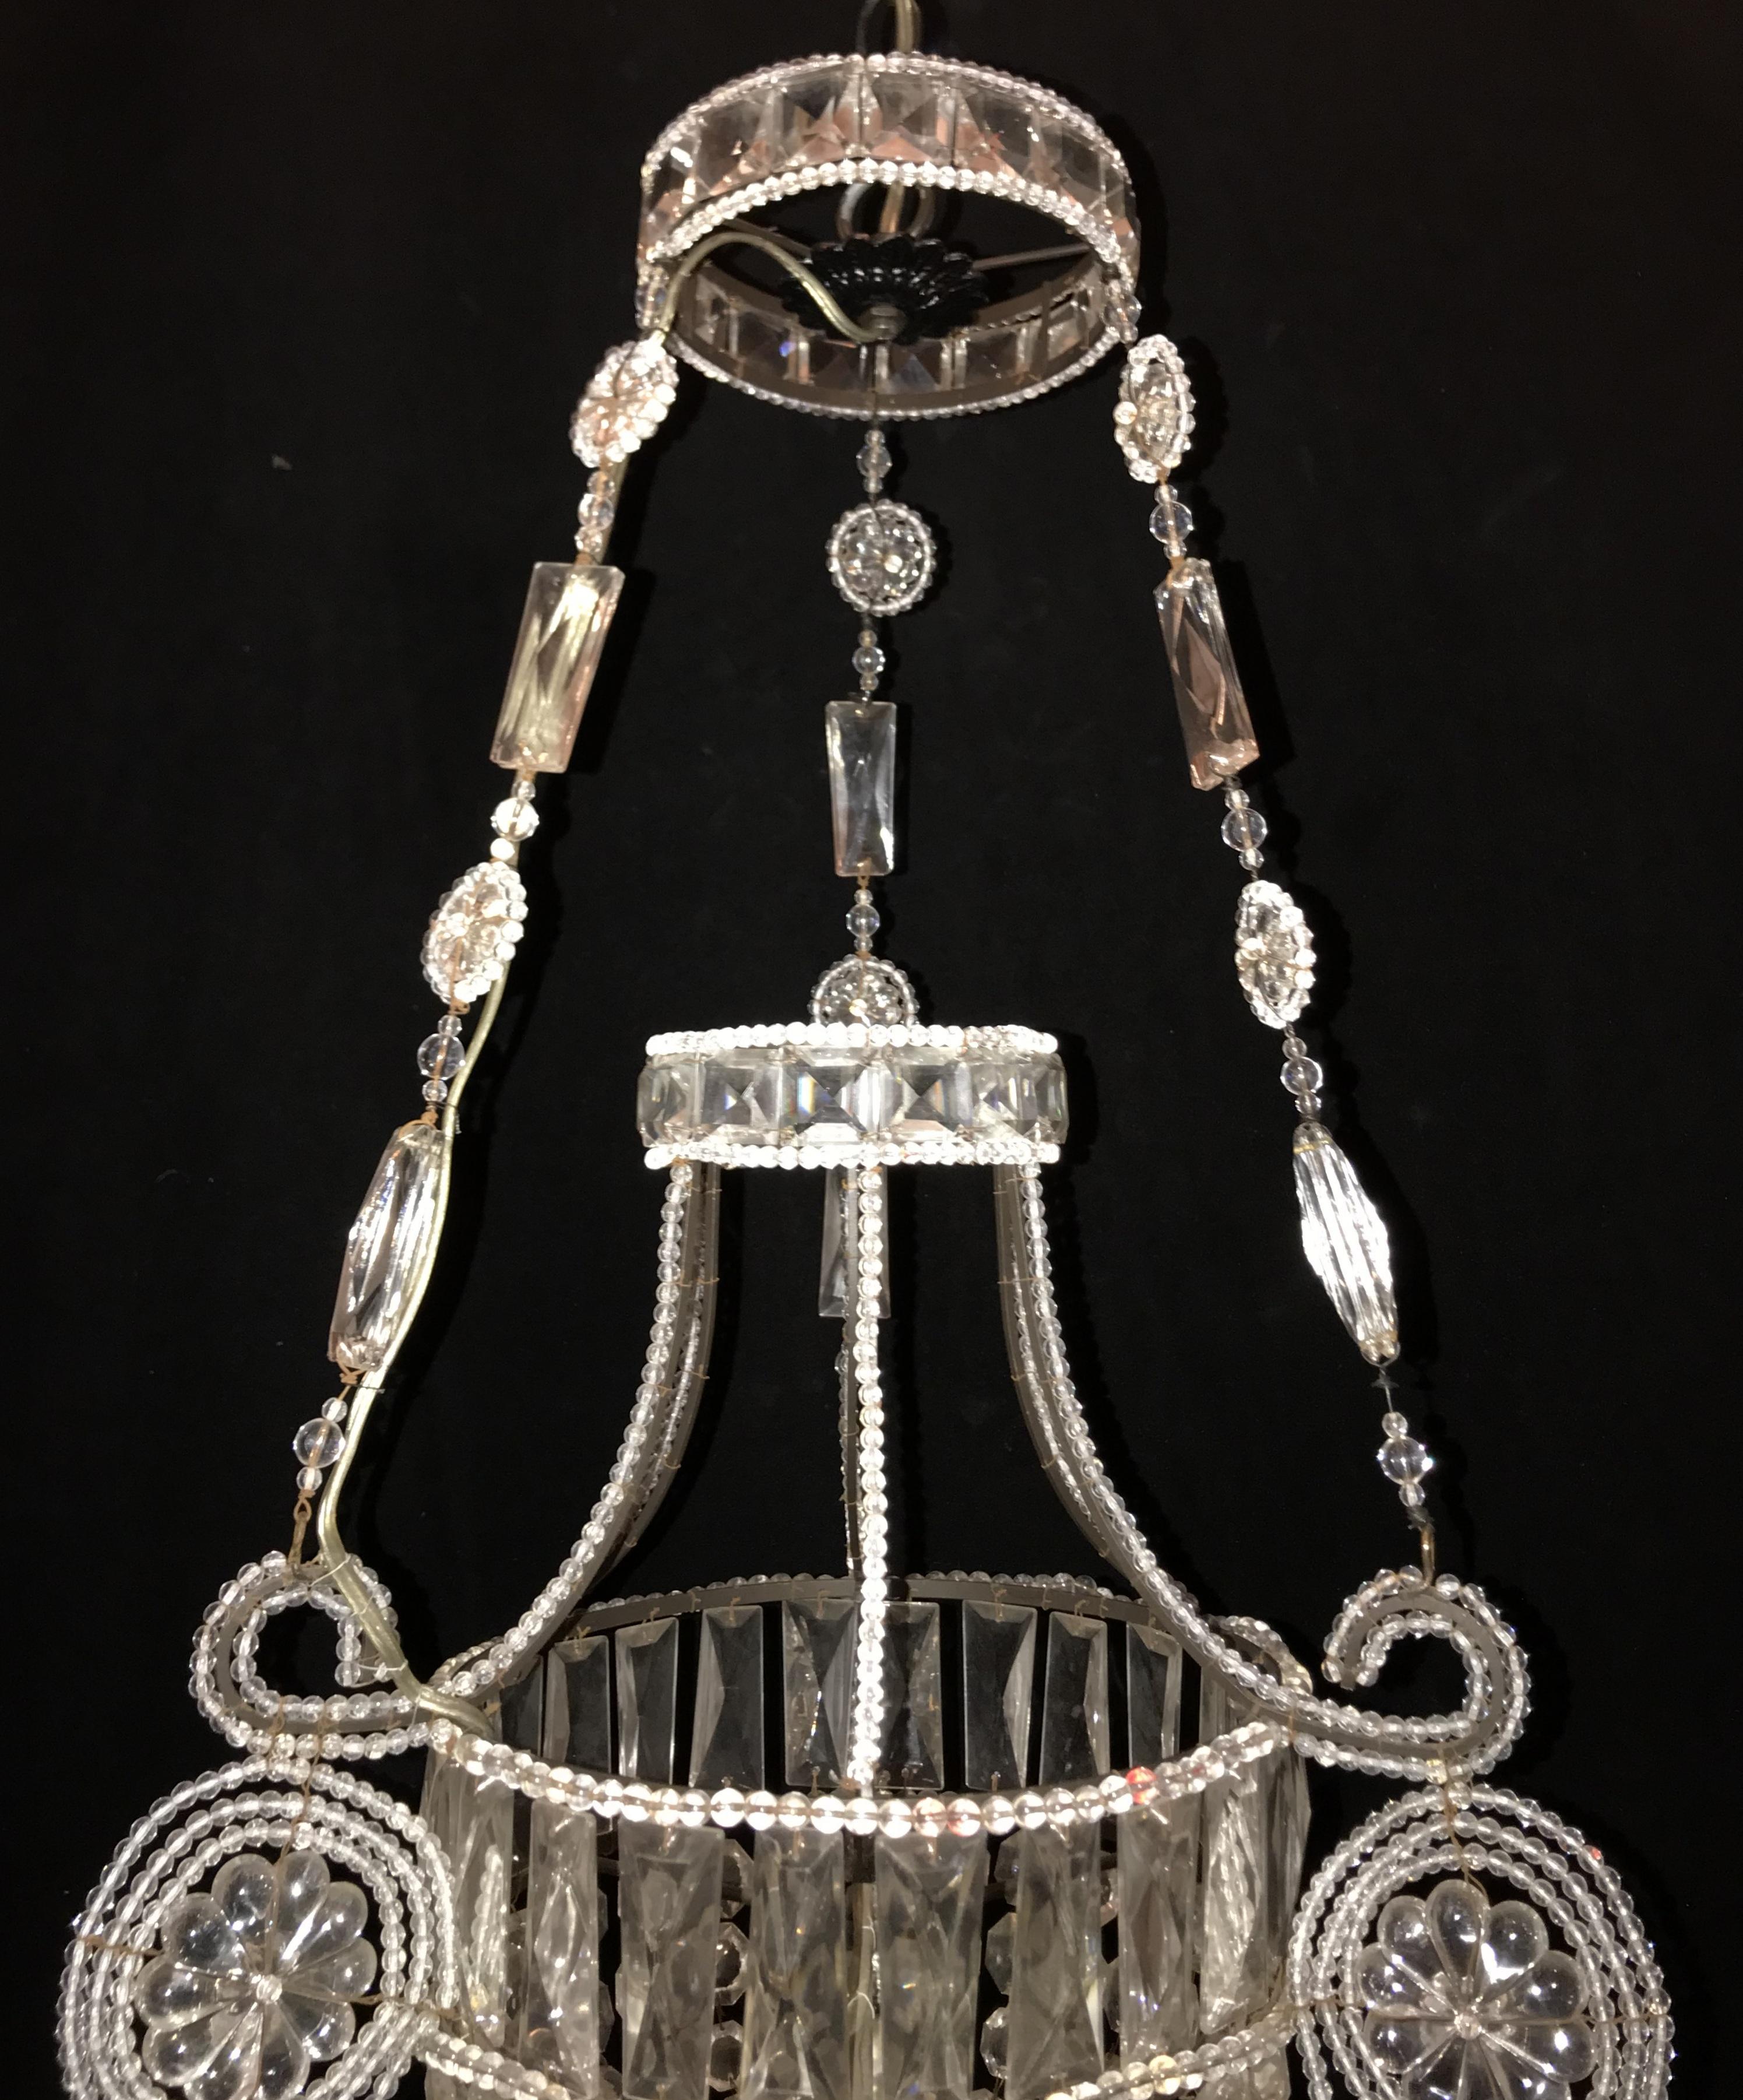 Une merveilleuse paire de lustres pendants italiens en cristal perlé, en verre ou en forme d'urne, avec des ampoules Edison chacune.
La hauteur est réglable selon vos besoins.
Deux disponibles,
Vendu séparément.